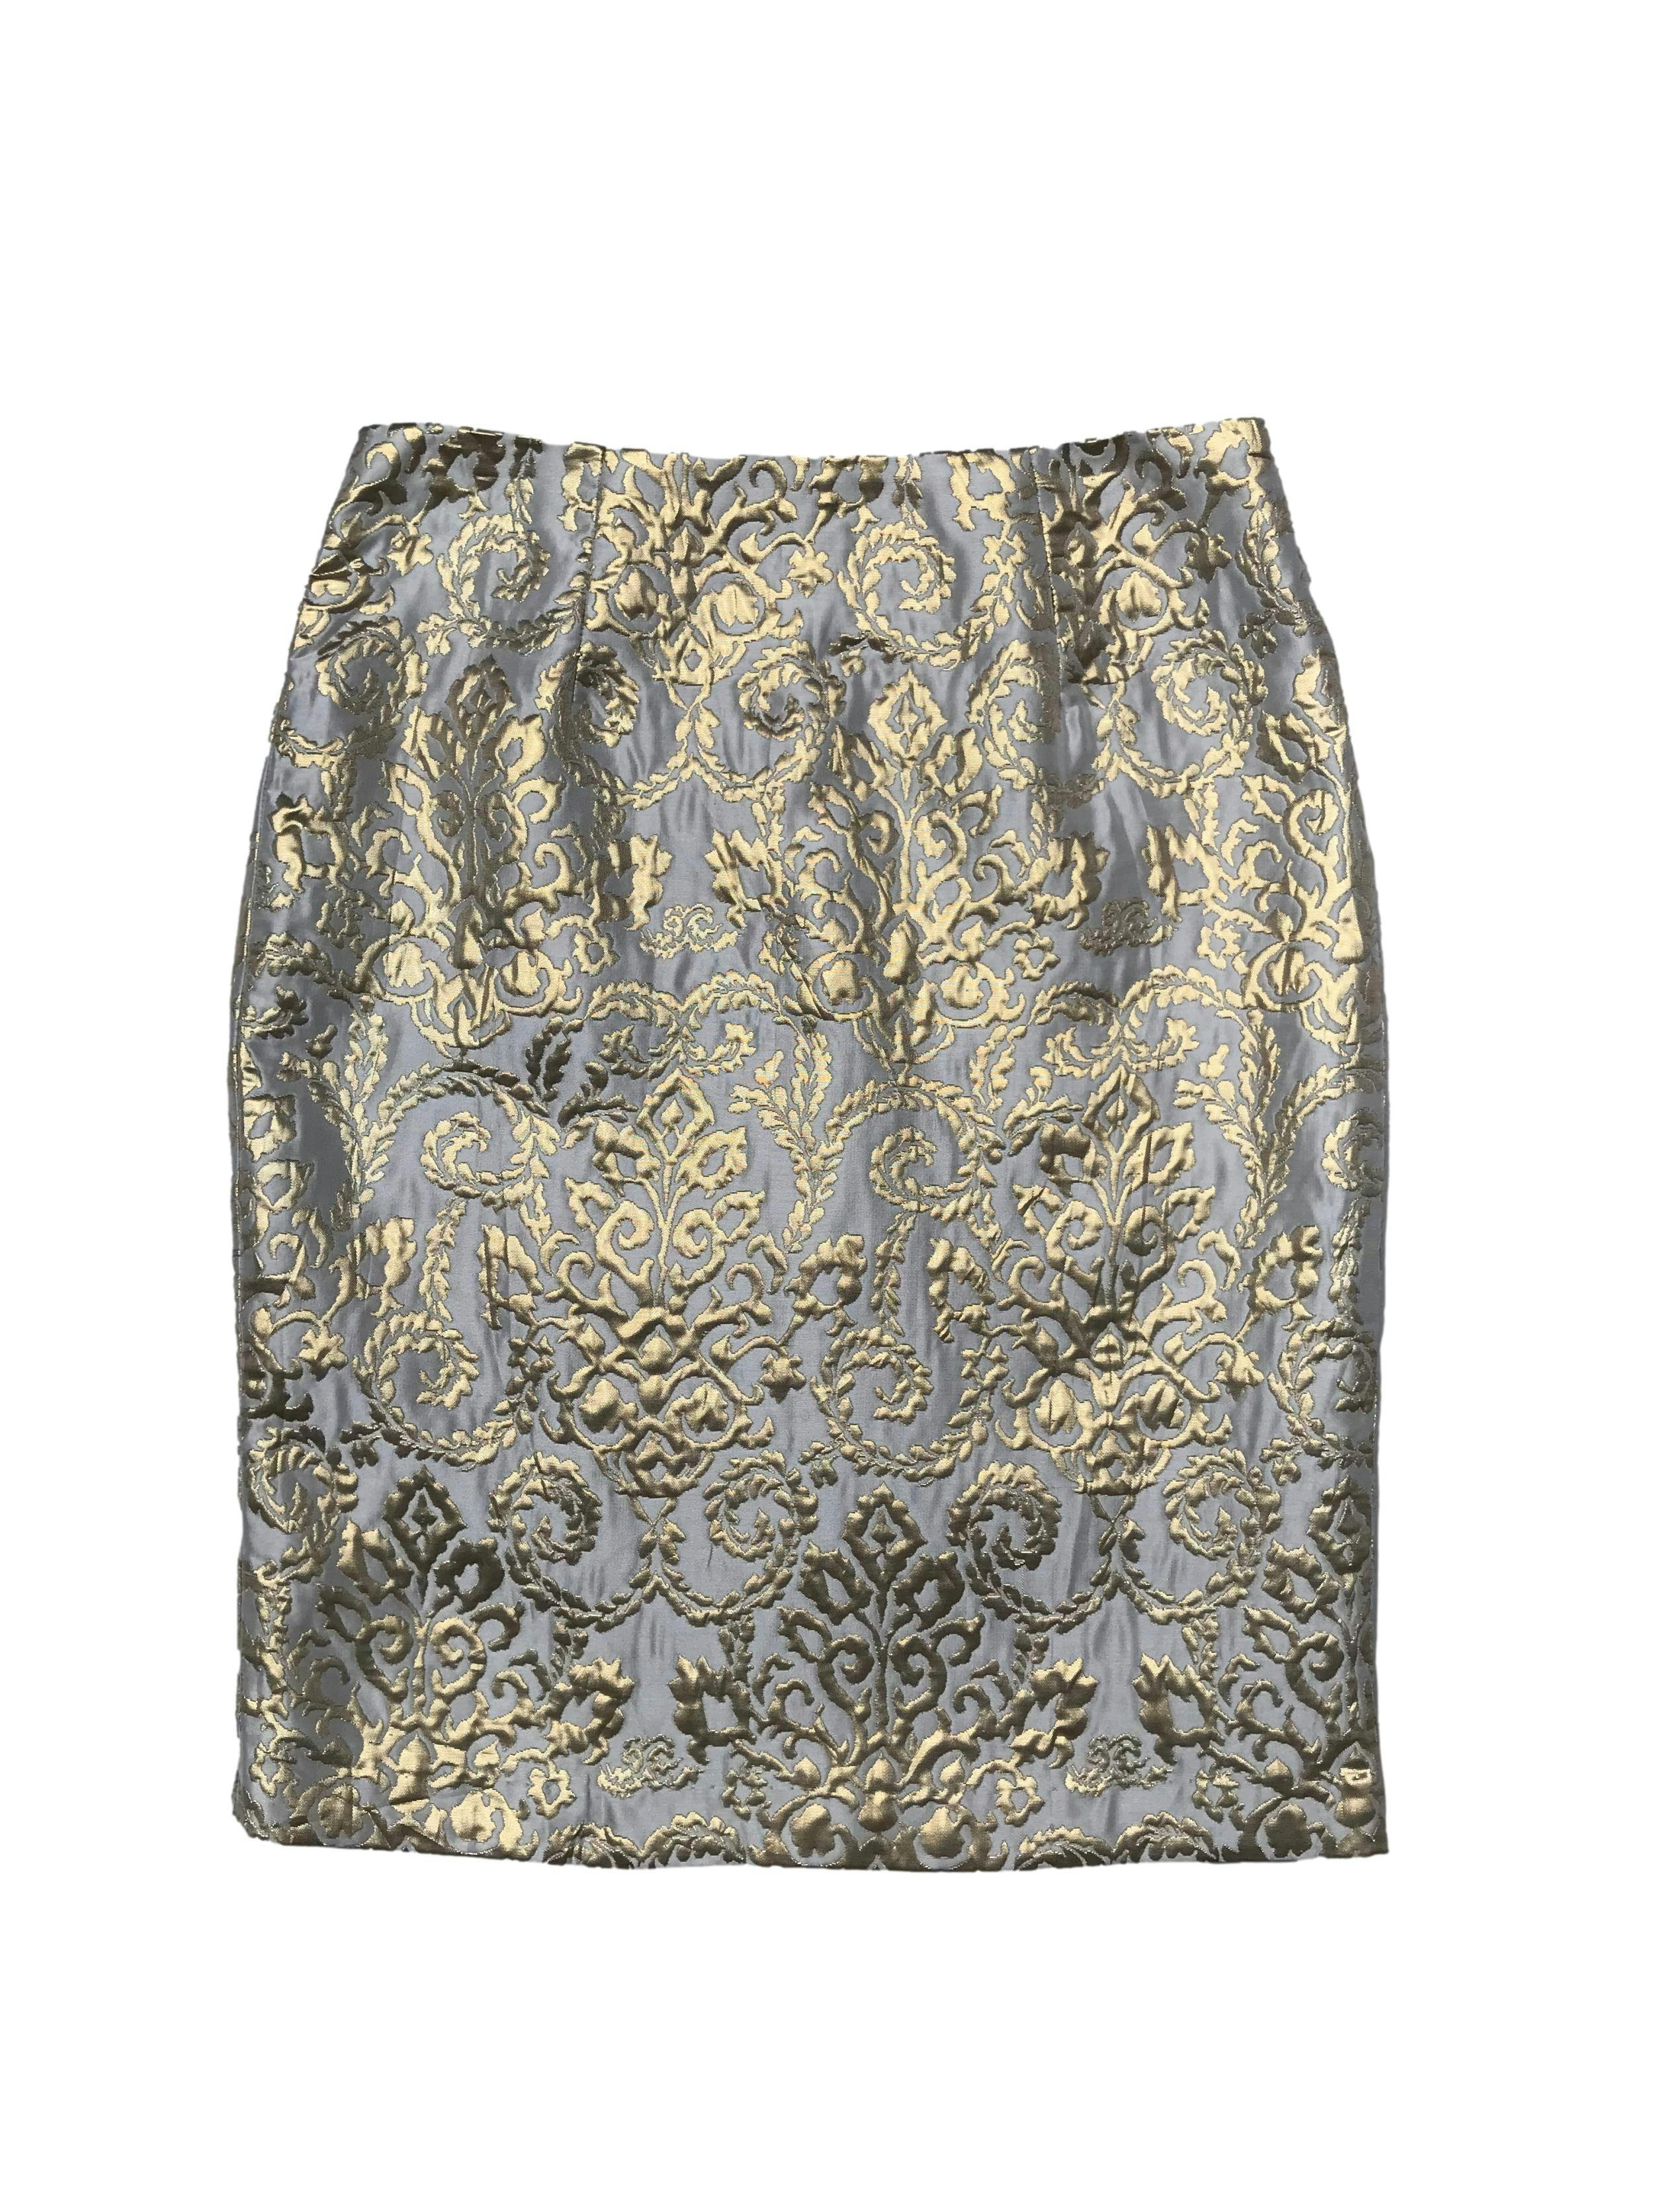 Falda Sunny Leigh crema con brocado dorado satinado, corte recto, forrada, con cierre posterior. Cintura 76cm Largo 58cm